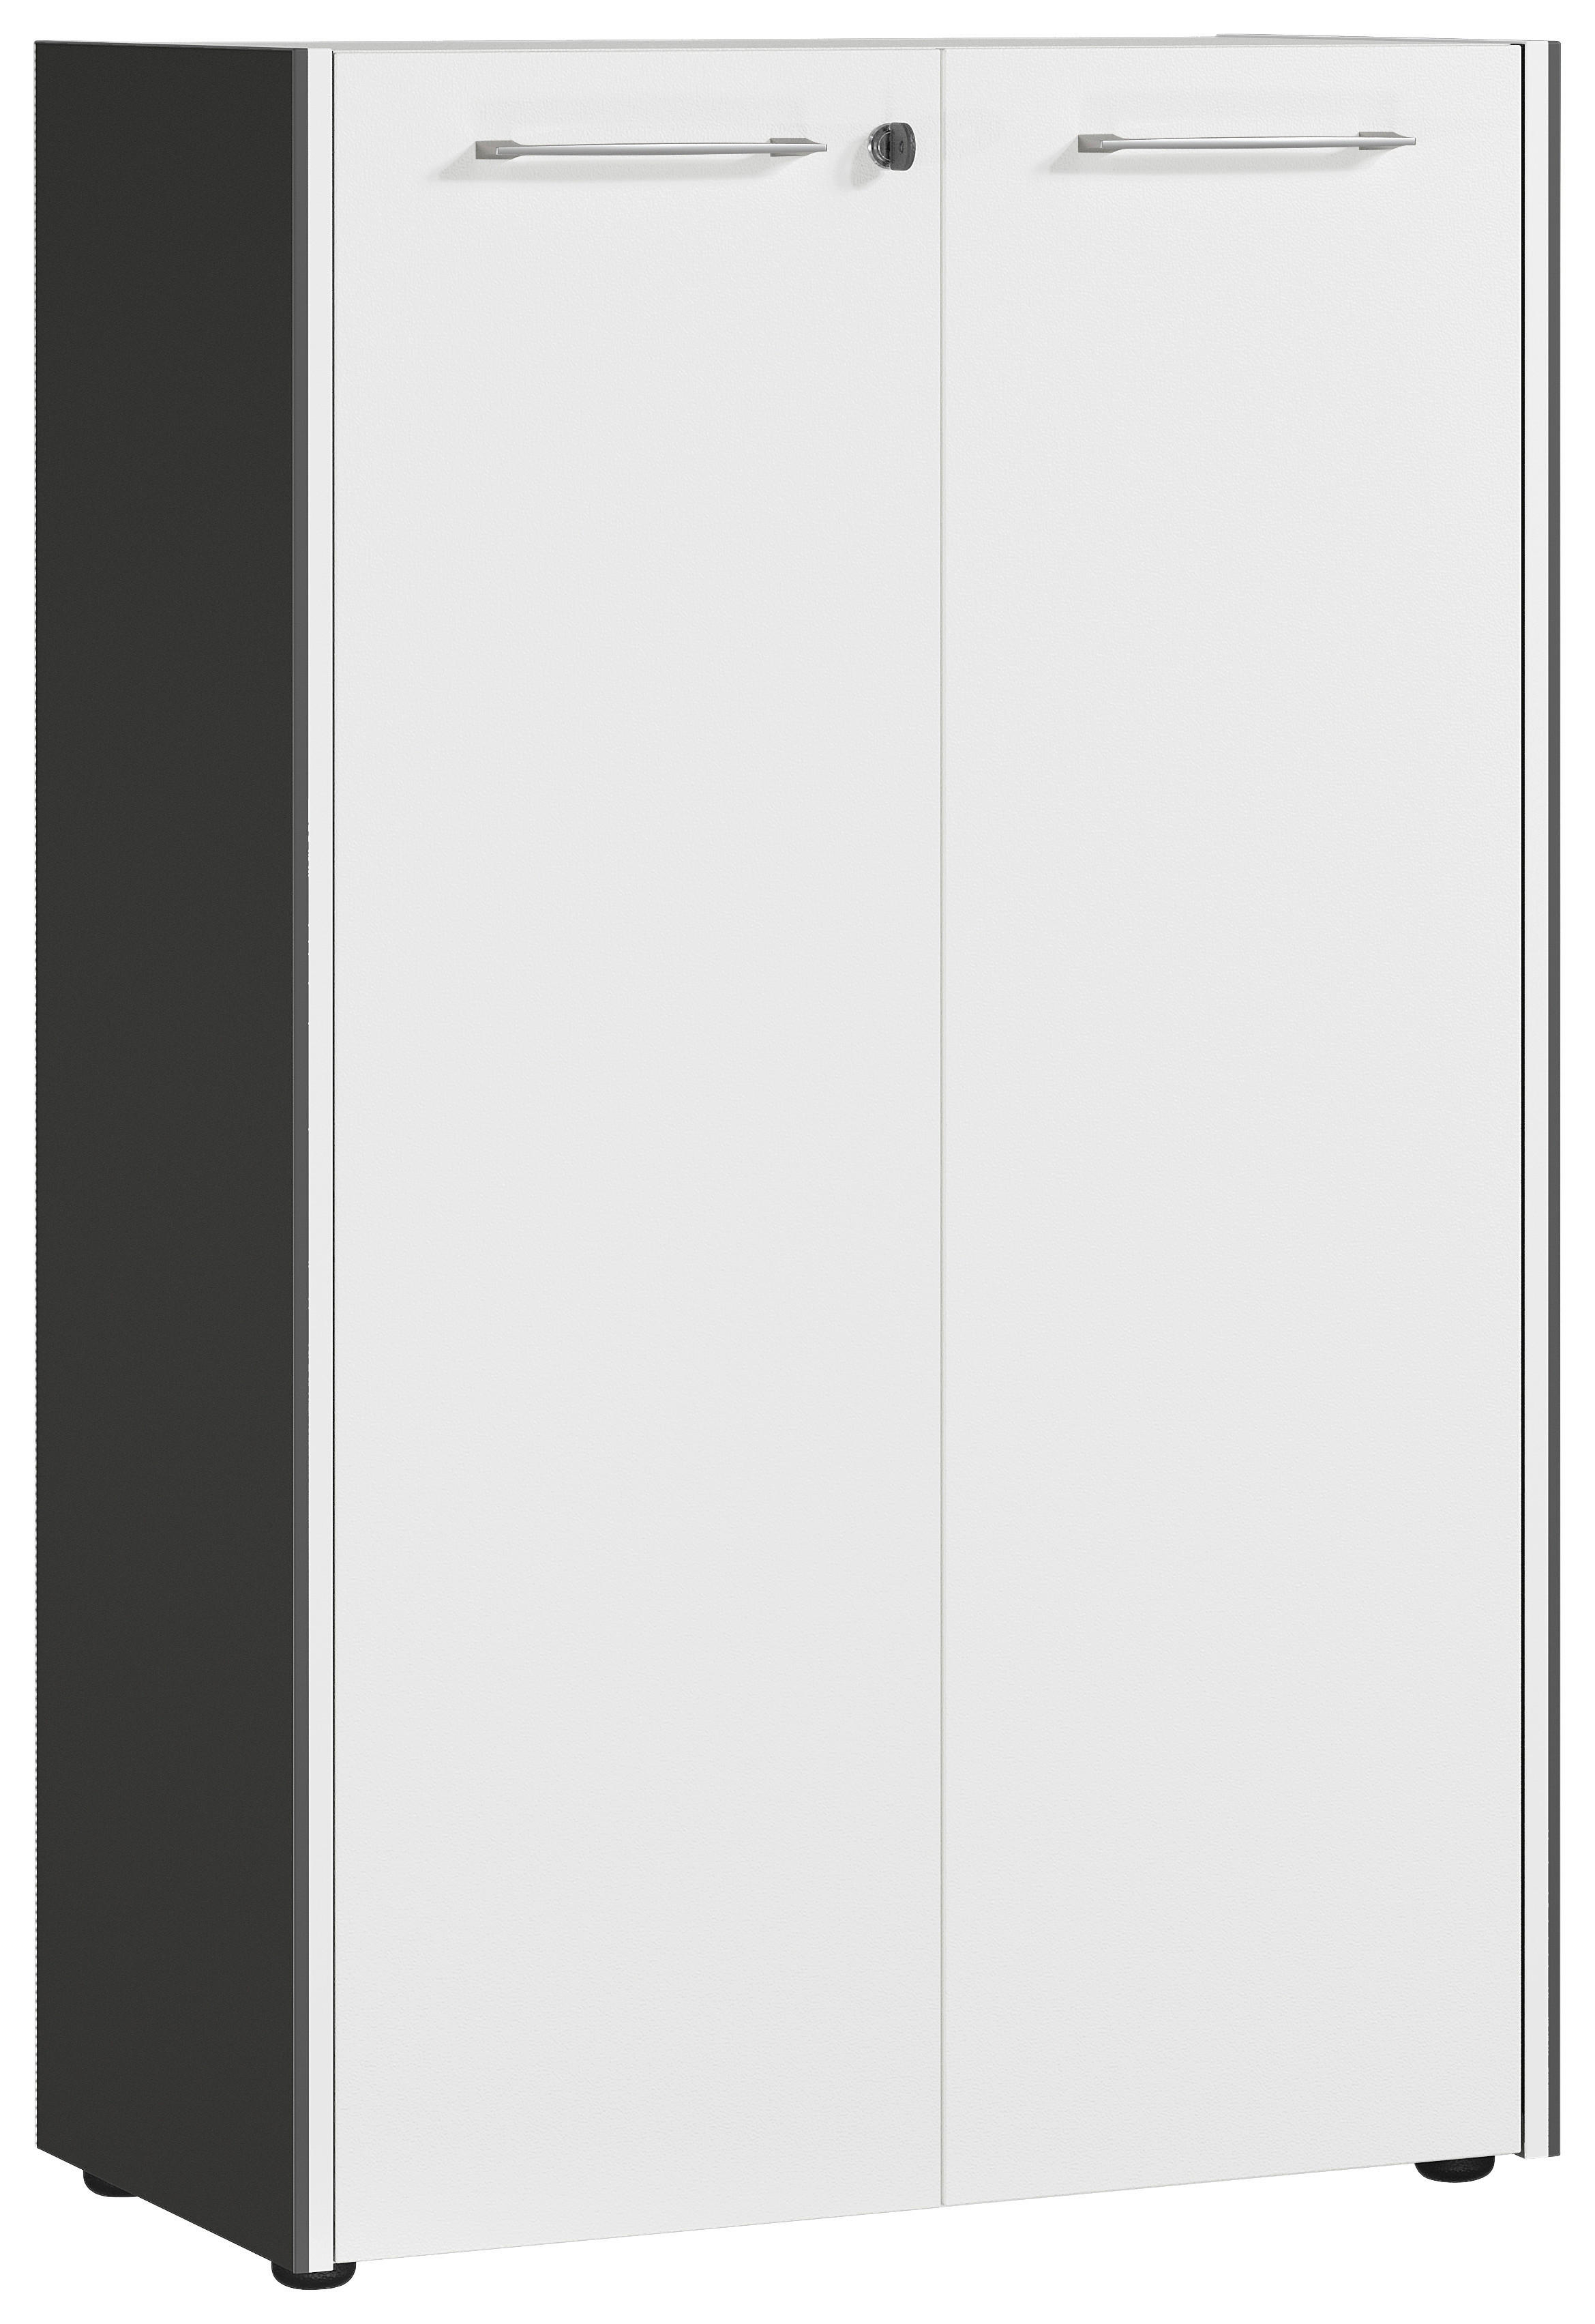 AKTENSCHRANK Graphitfarben, Weiß  - Graphitfarben/Weiß, MODERN, Holzwerkstoff (75/120/40cm) - Germania